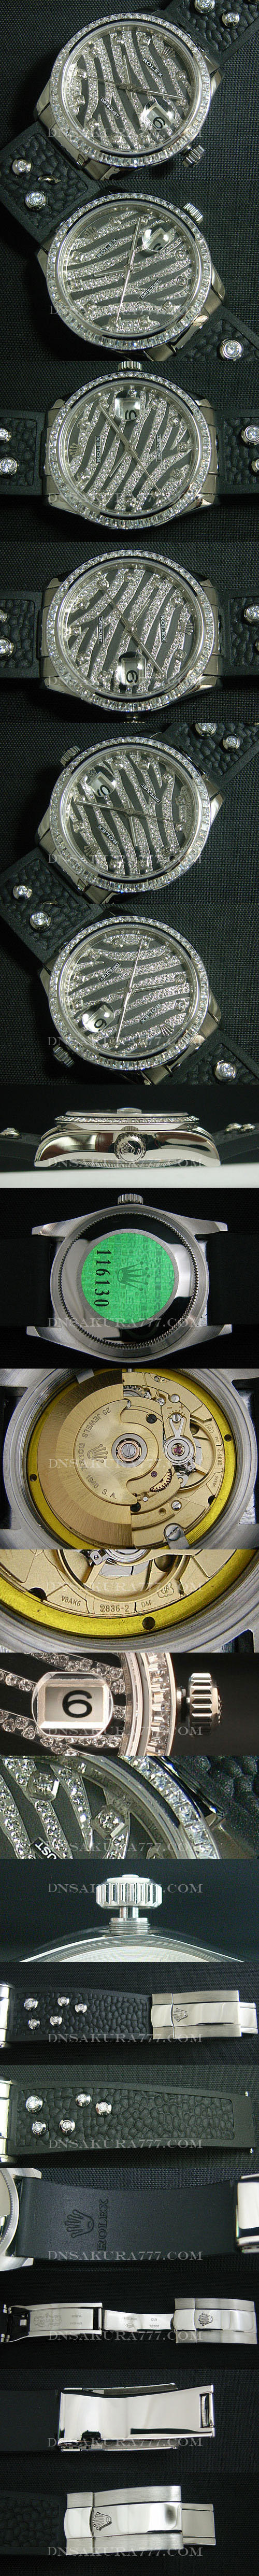 ブランド時計コピー ロレックス デイトジャスト ロイヤル ブラック Swiss ETA社 2836-2 ムーブメント